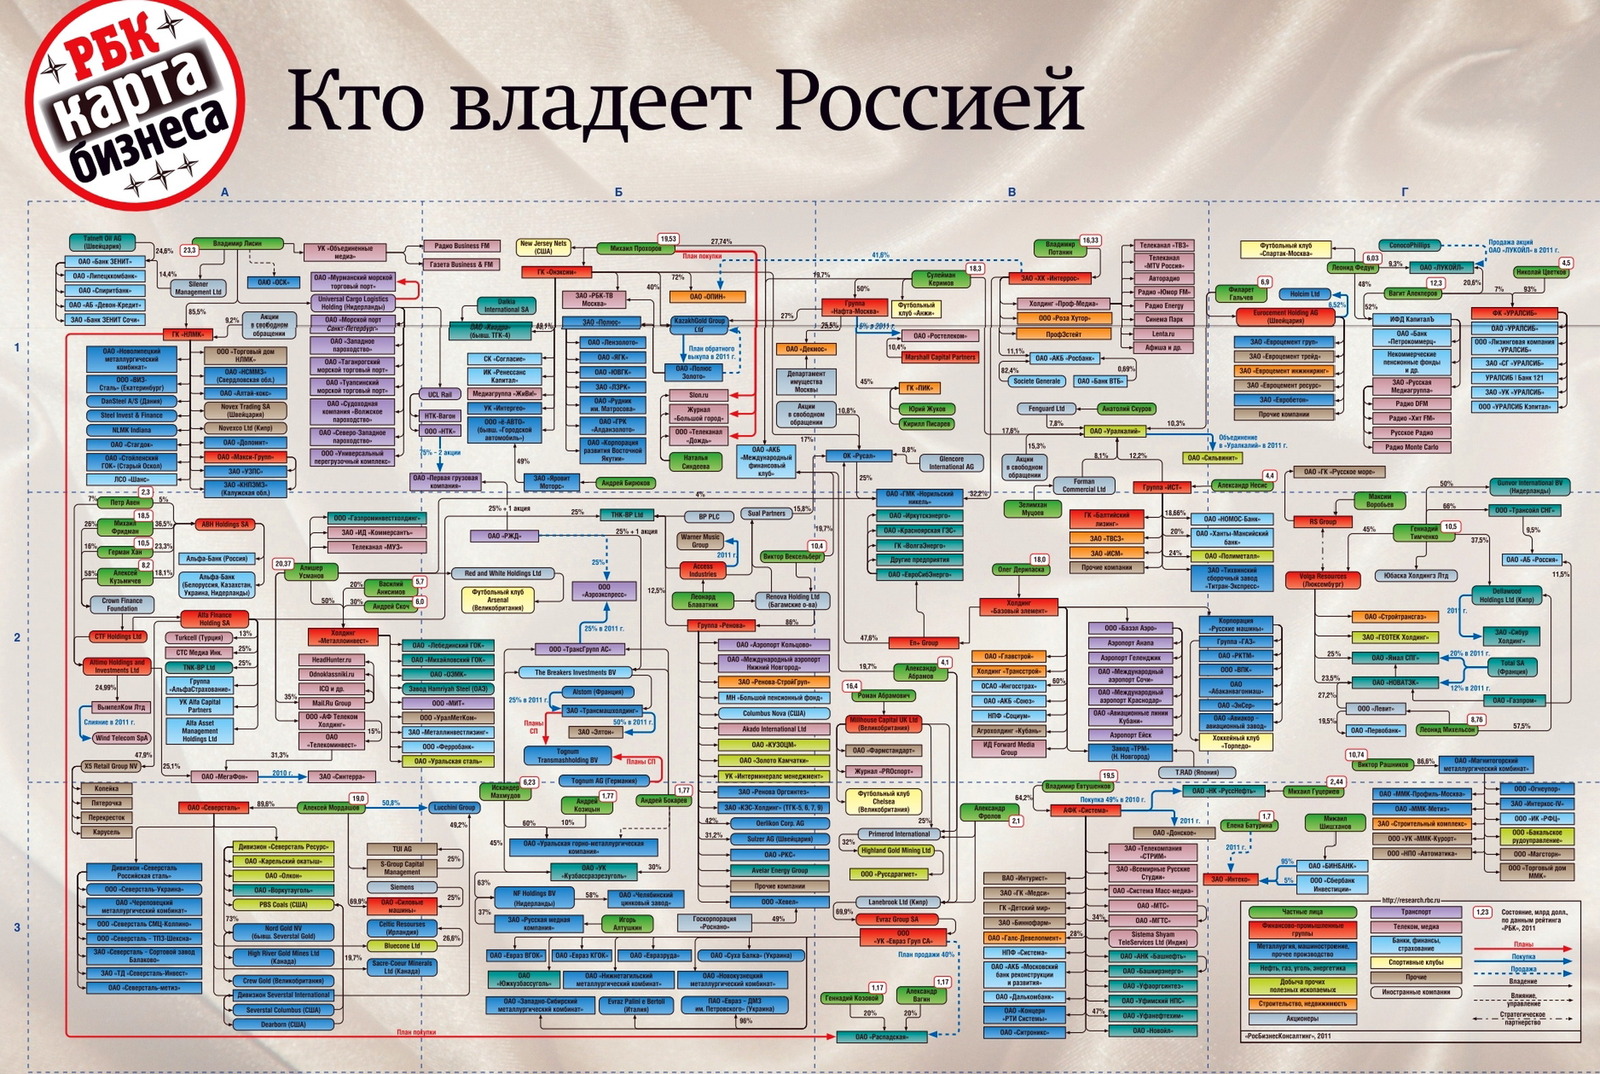 Кому принадлежит c. Кто владеет Россией. Кто владеет Россией РБК. РБК карта бизнеса кто владеет Россией. РБК карта бизнеса.